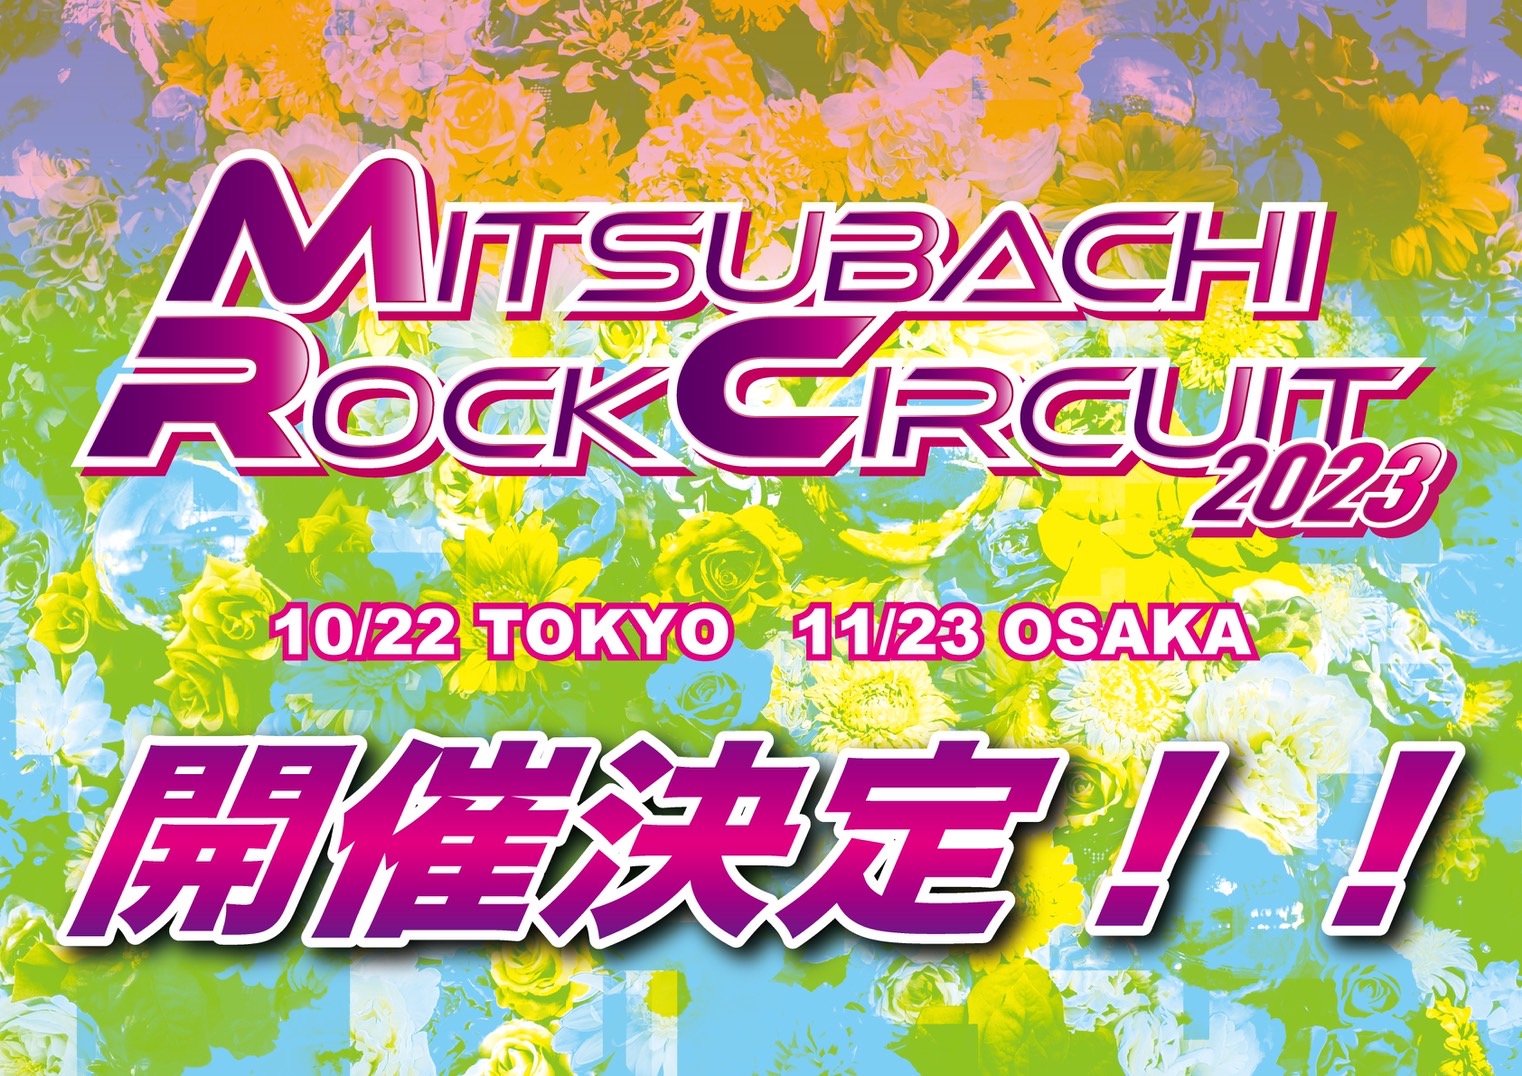 【東京】MITSUBACHI ROCK CIRCUIT 2023 in TOKYO